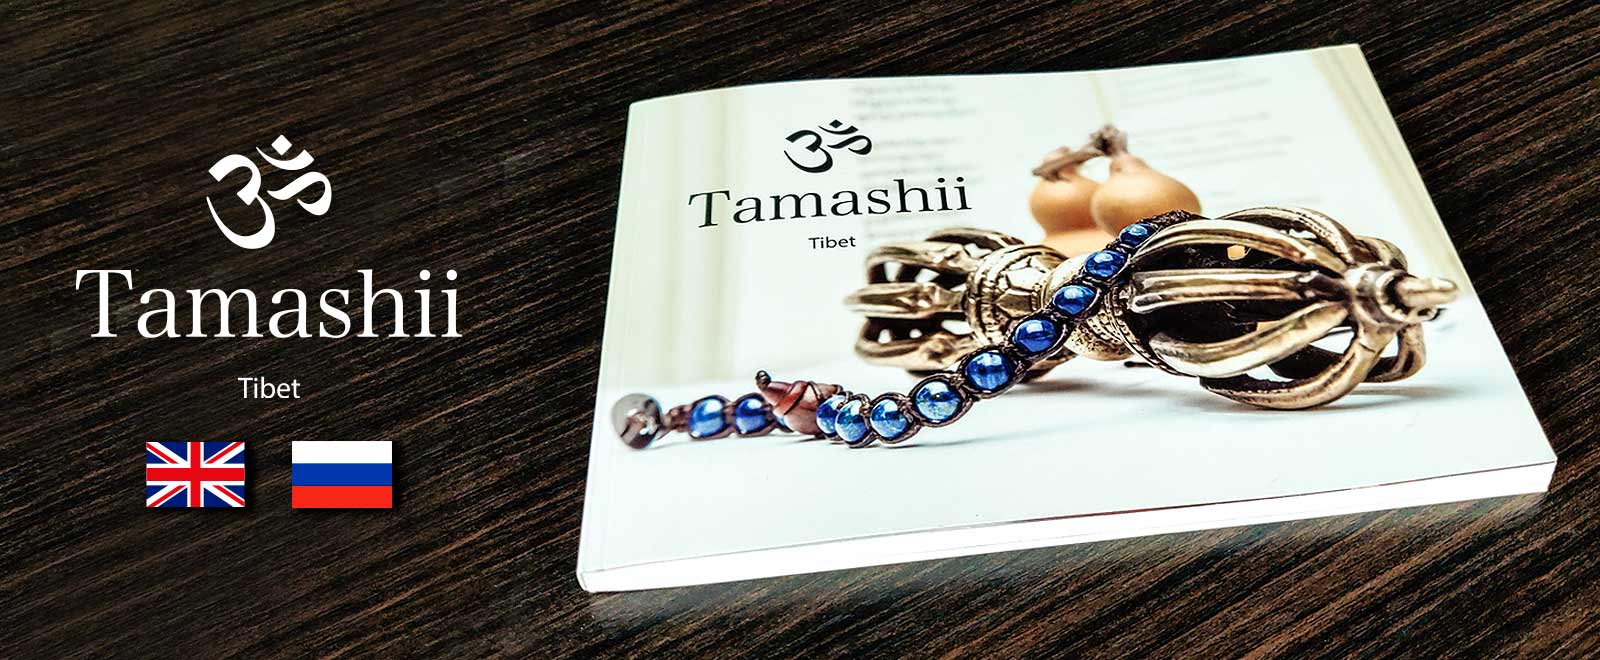 Tamashii - Nuova collezione Bandiere Tibetane